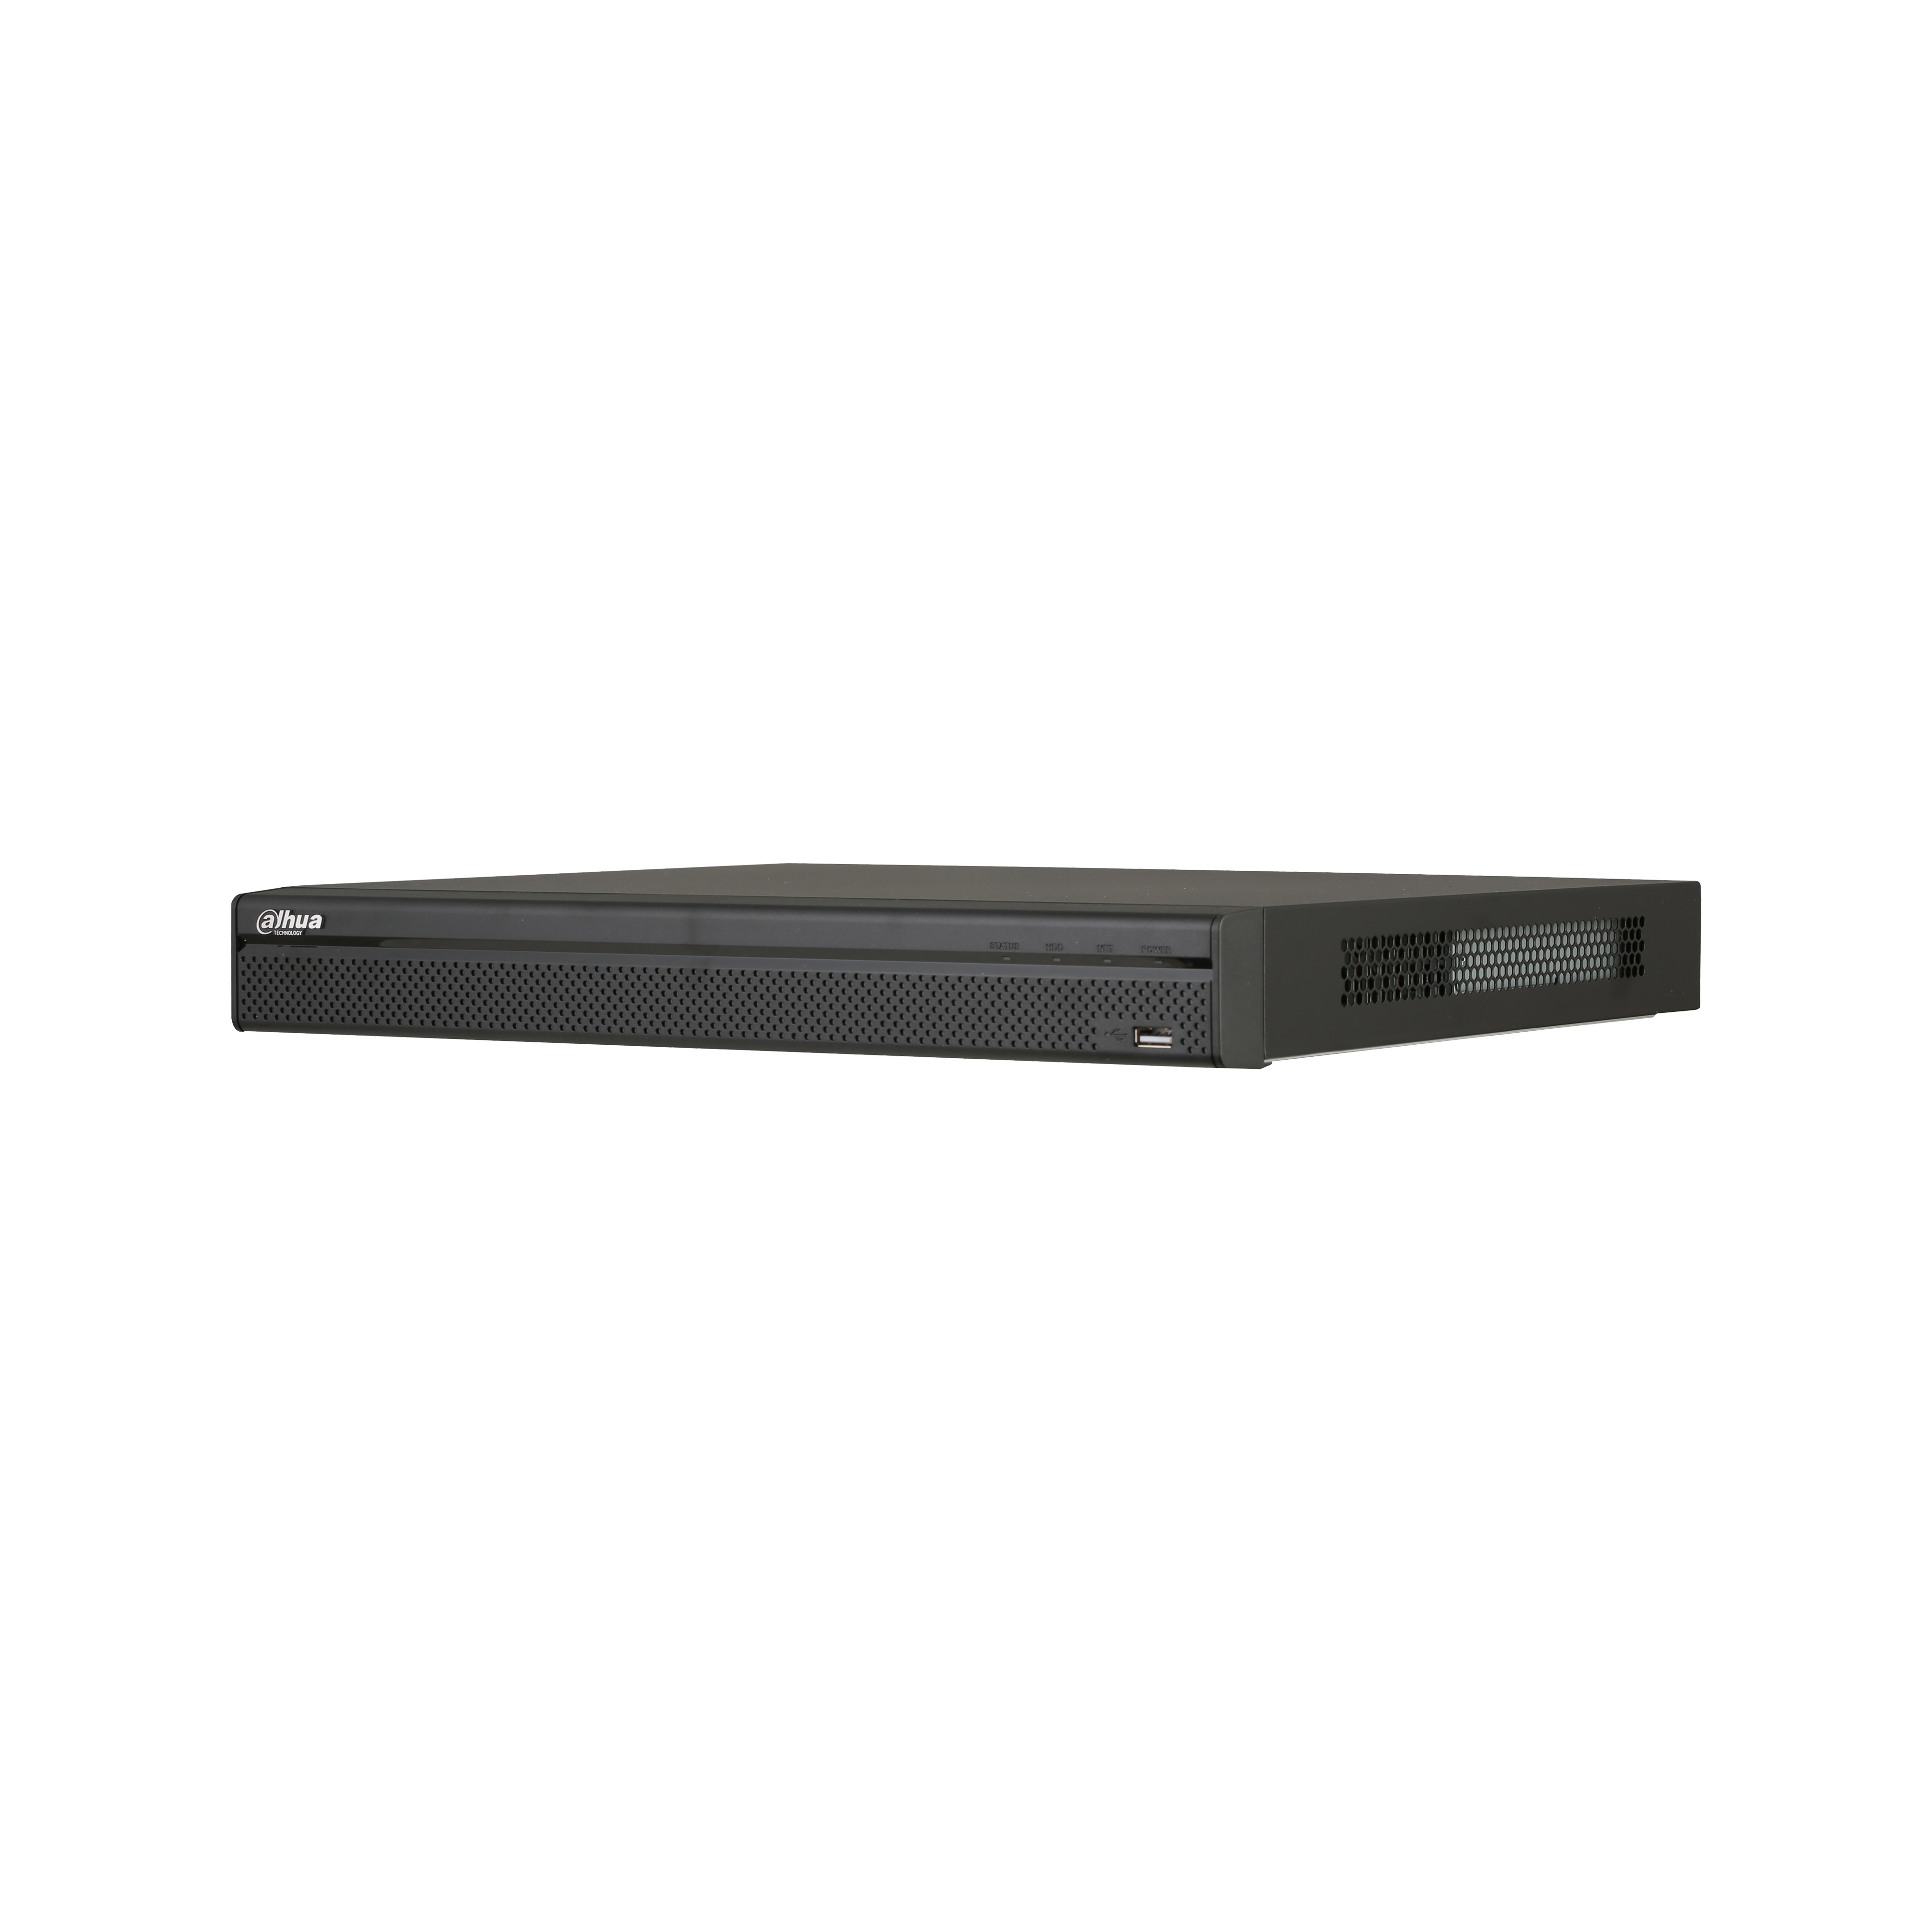 Dahua NVR5208-8P-4KS2E - Mrežni video snimač sa 8 kanala i 8 PoE portova.